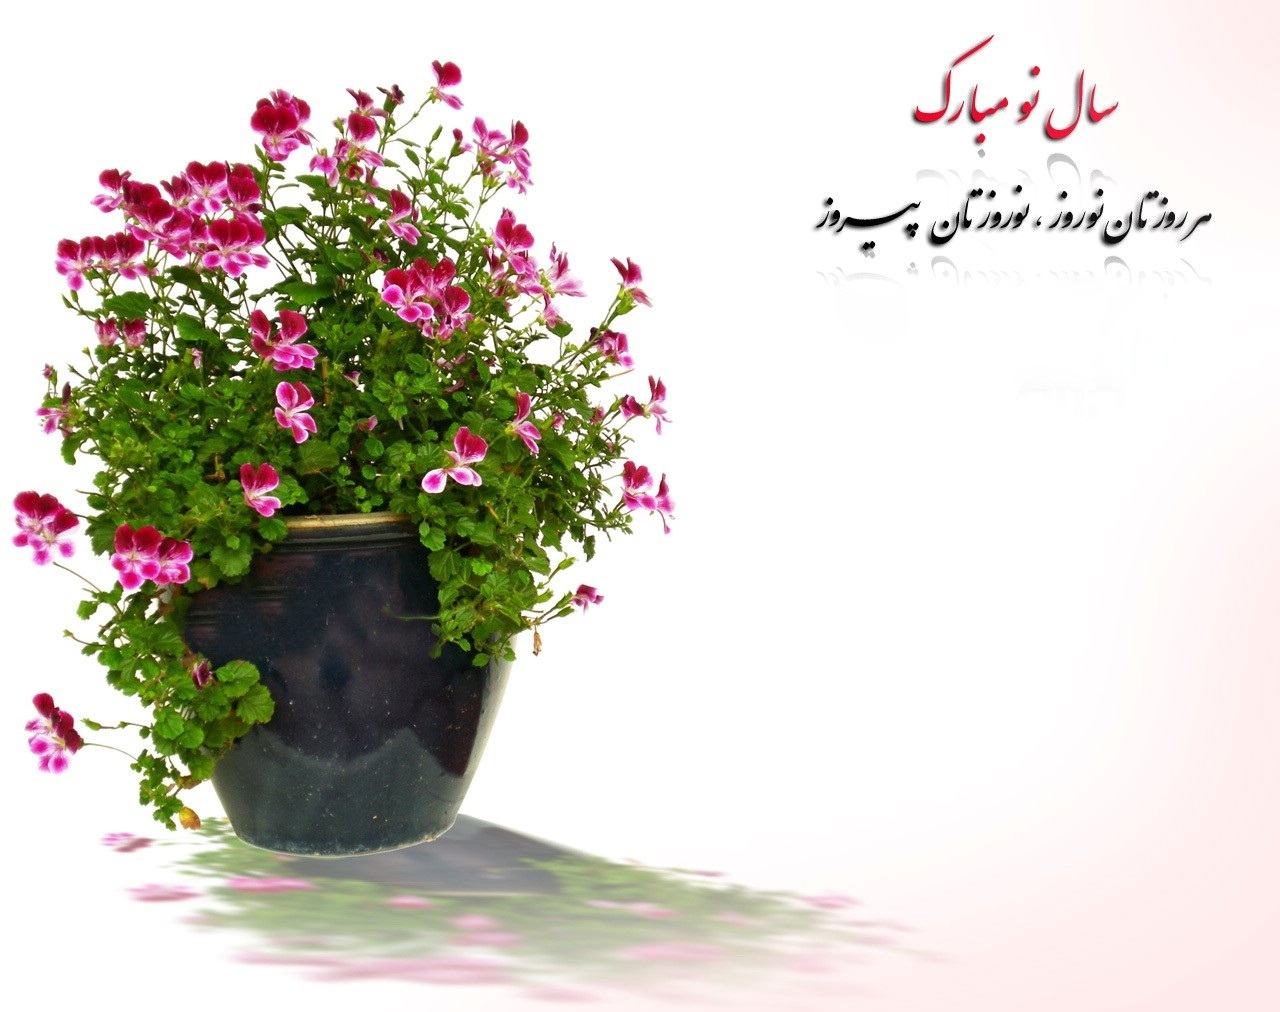 متن رسمی و ادبی تبریک عید نوروز برای ارسال به همکاران و مدیر